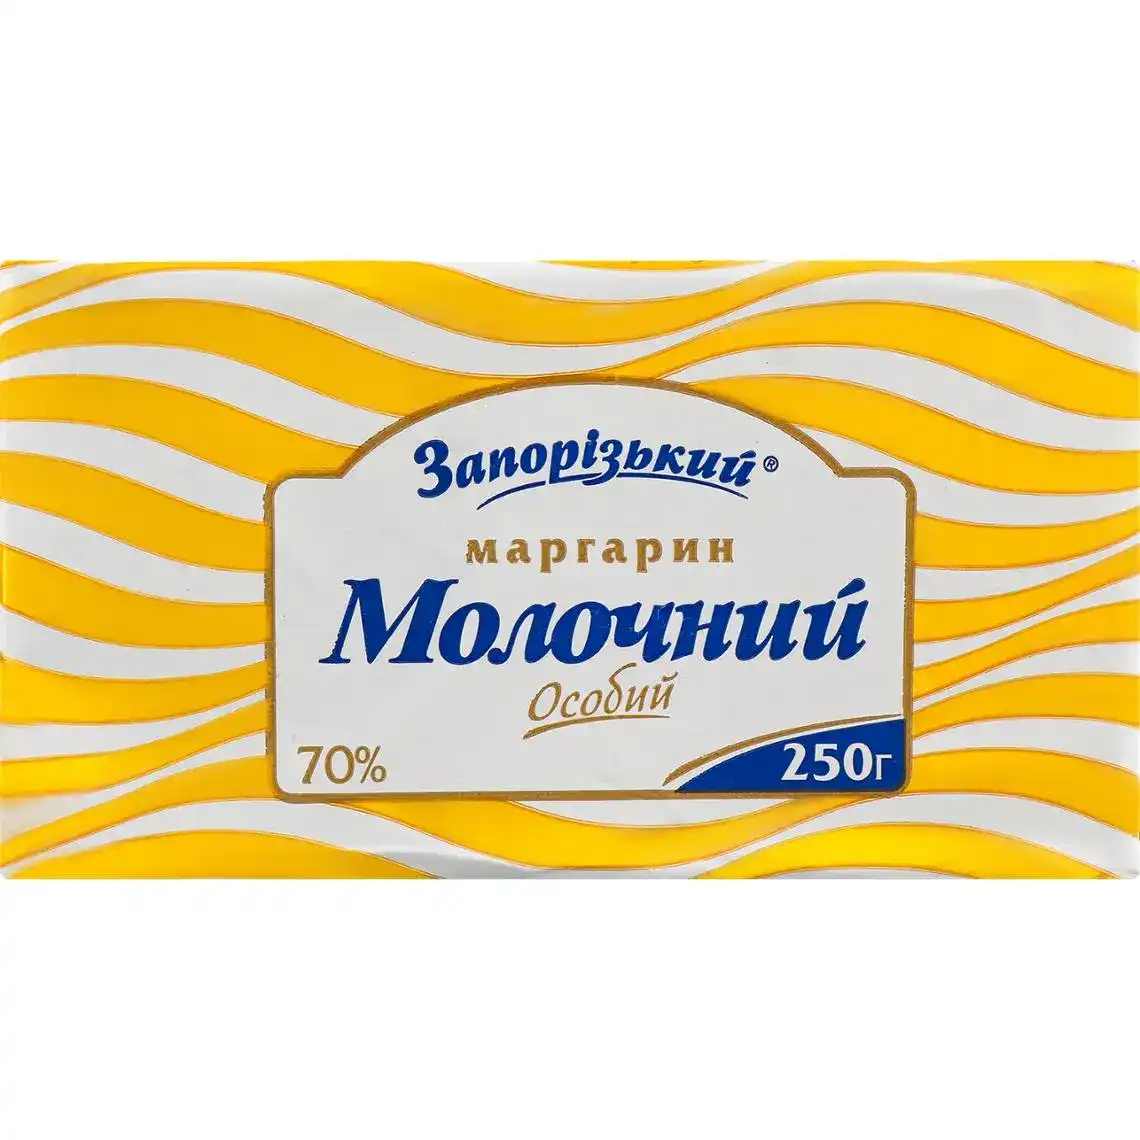 Маргарин Запорожский молочный особый столовый 70% 250 г